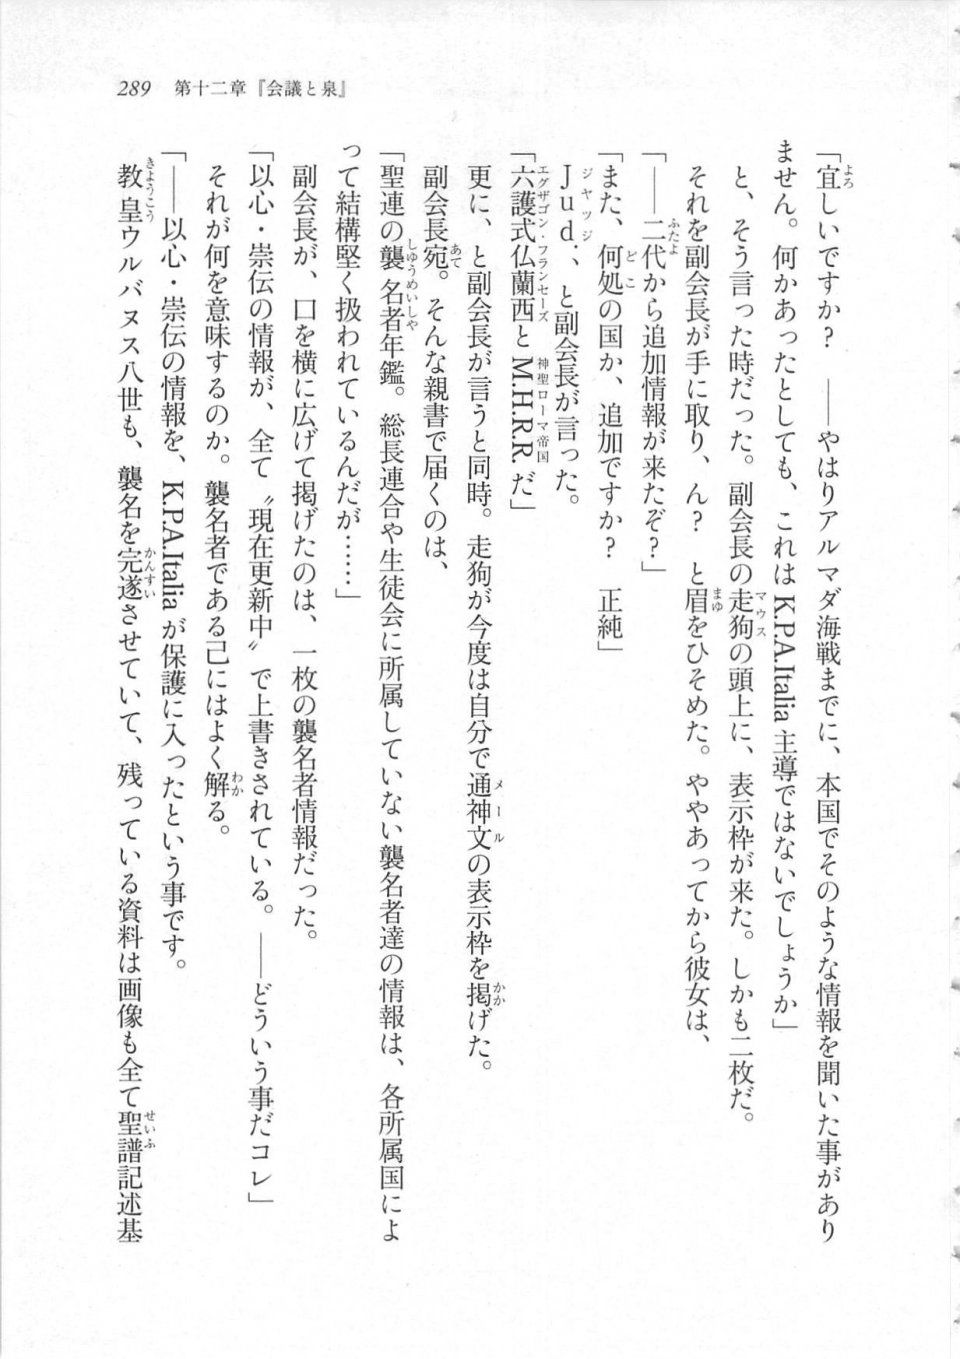 Kyoukai Senjou no Horizon LN Sidestory Vol 3 - Photo #293